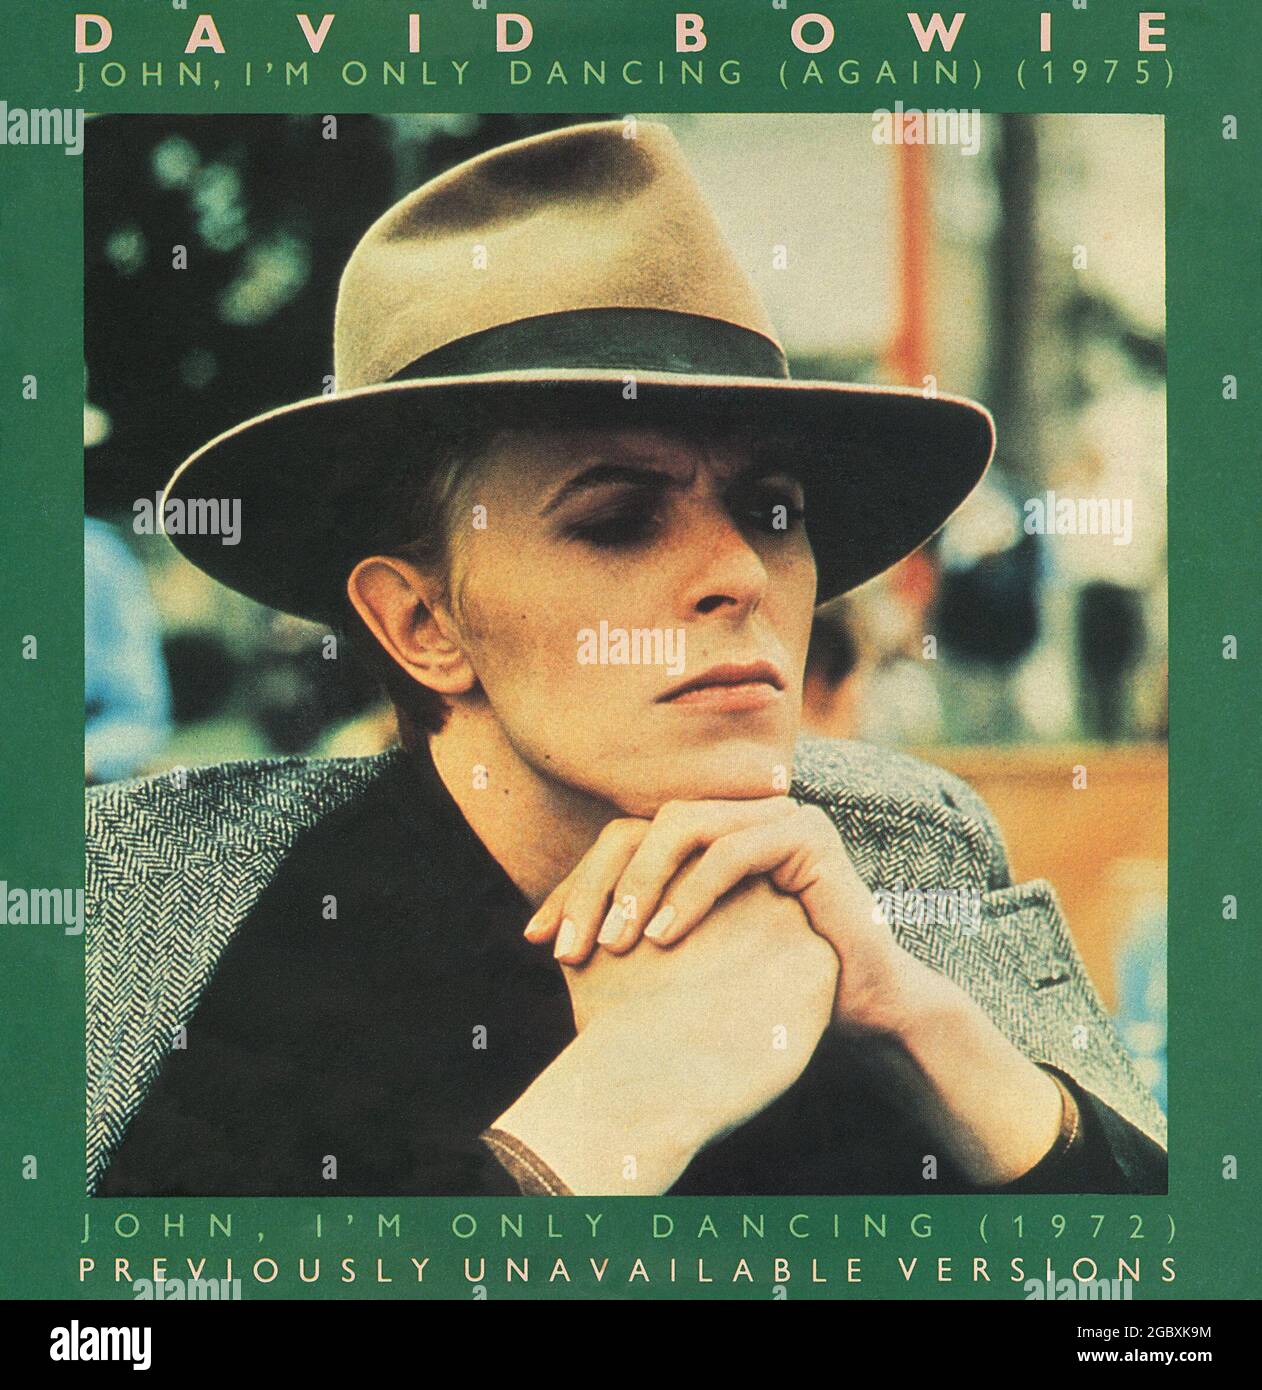 Frontcover der Plattenhülle für die UK 45 rpm Vinyl Single von John, I'm Only Dancing (Again) von David Bowie. Ausgabe des RCA-Labels am 14. Dezember 1979. Produziert von David Bowie und Tony Visconti. Stockfoto